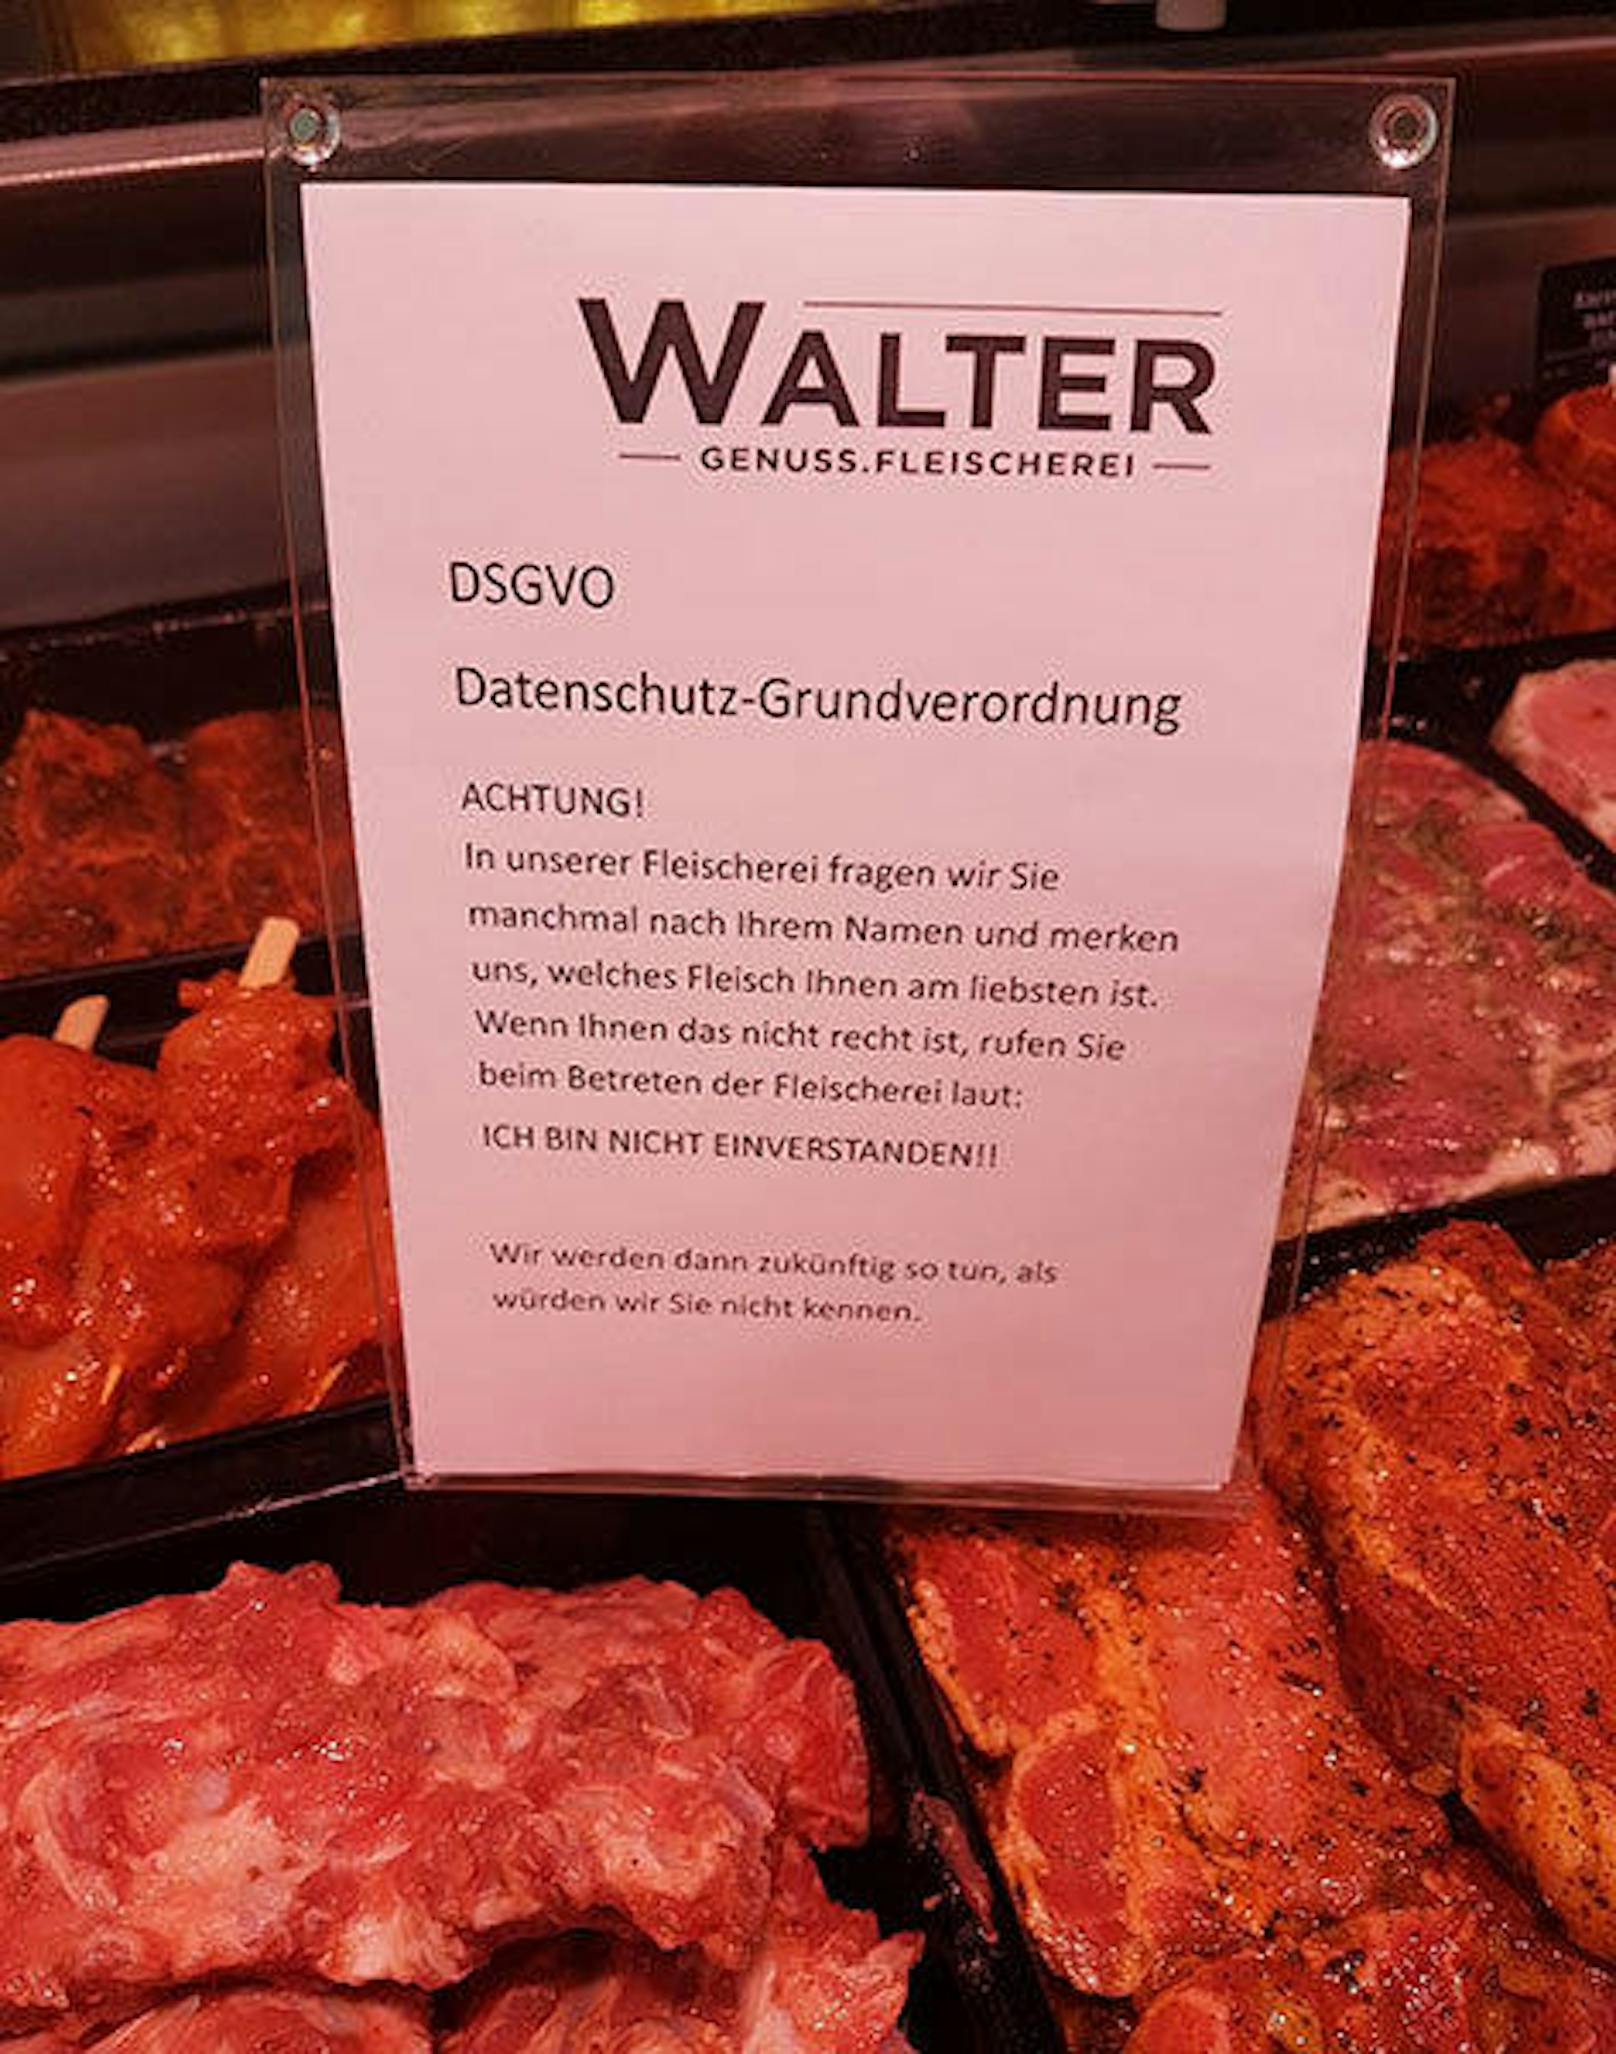 Walter Genuss.Fleischerei in Salzburg witzelt über DSGVO
Credit: Walter Genuss.Fleischerei